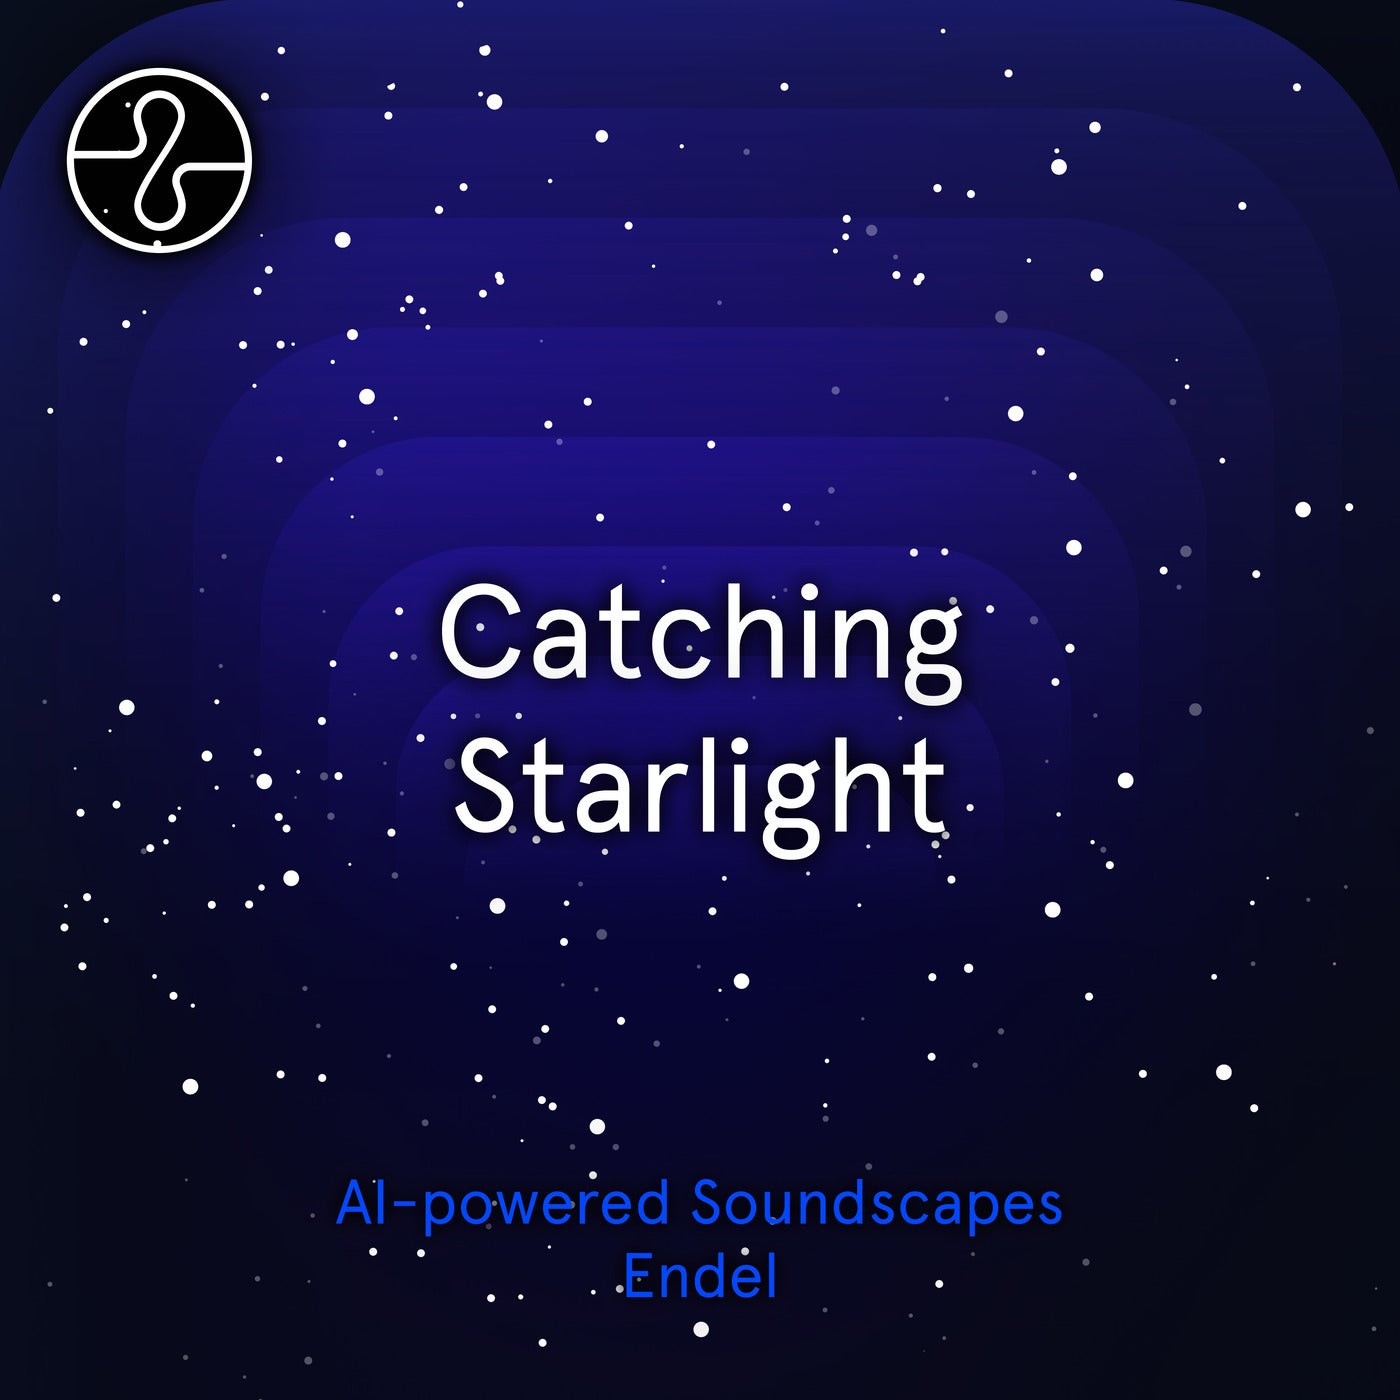 Catching Starlight